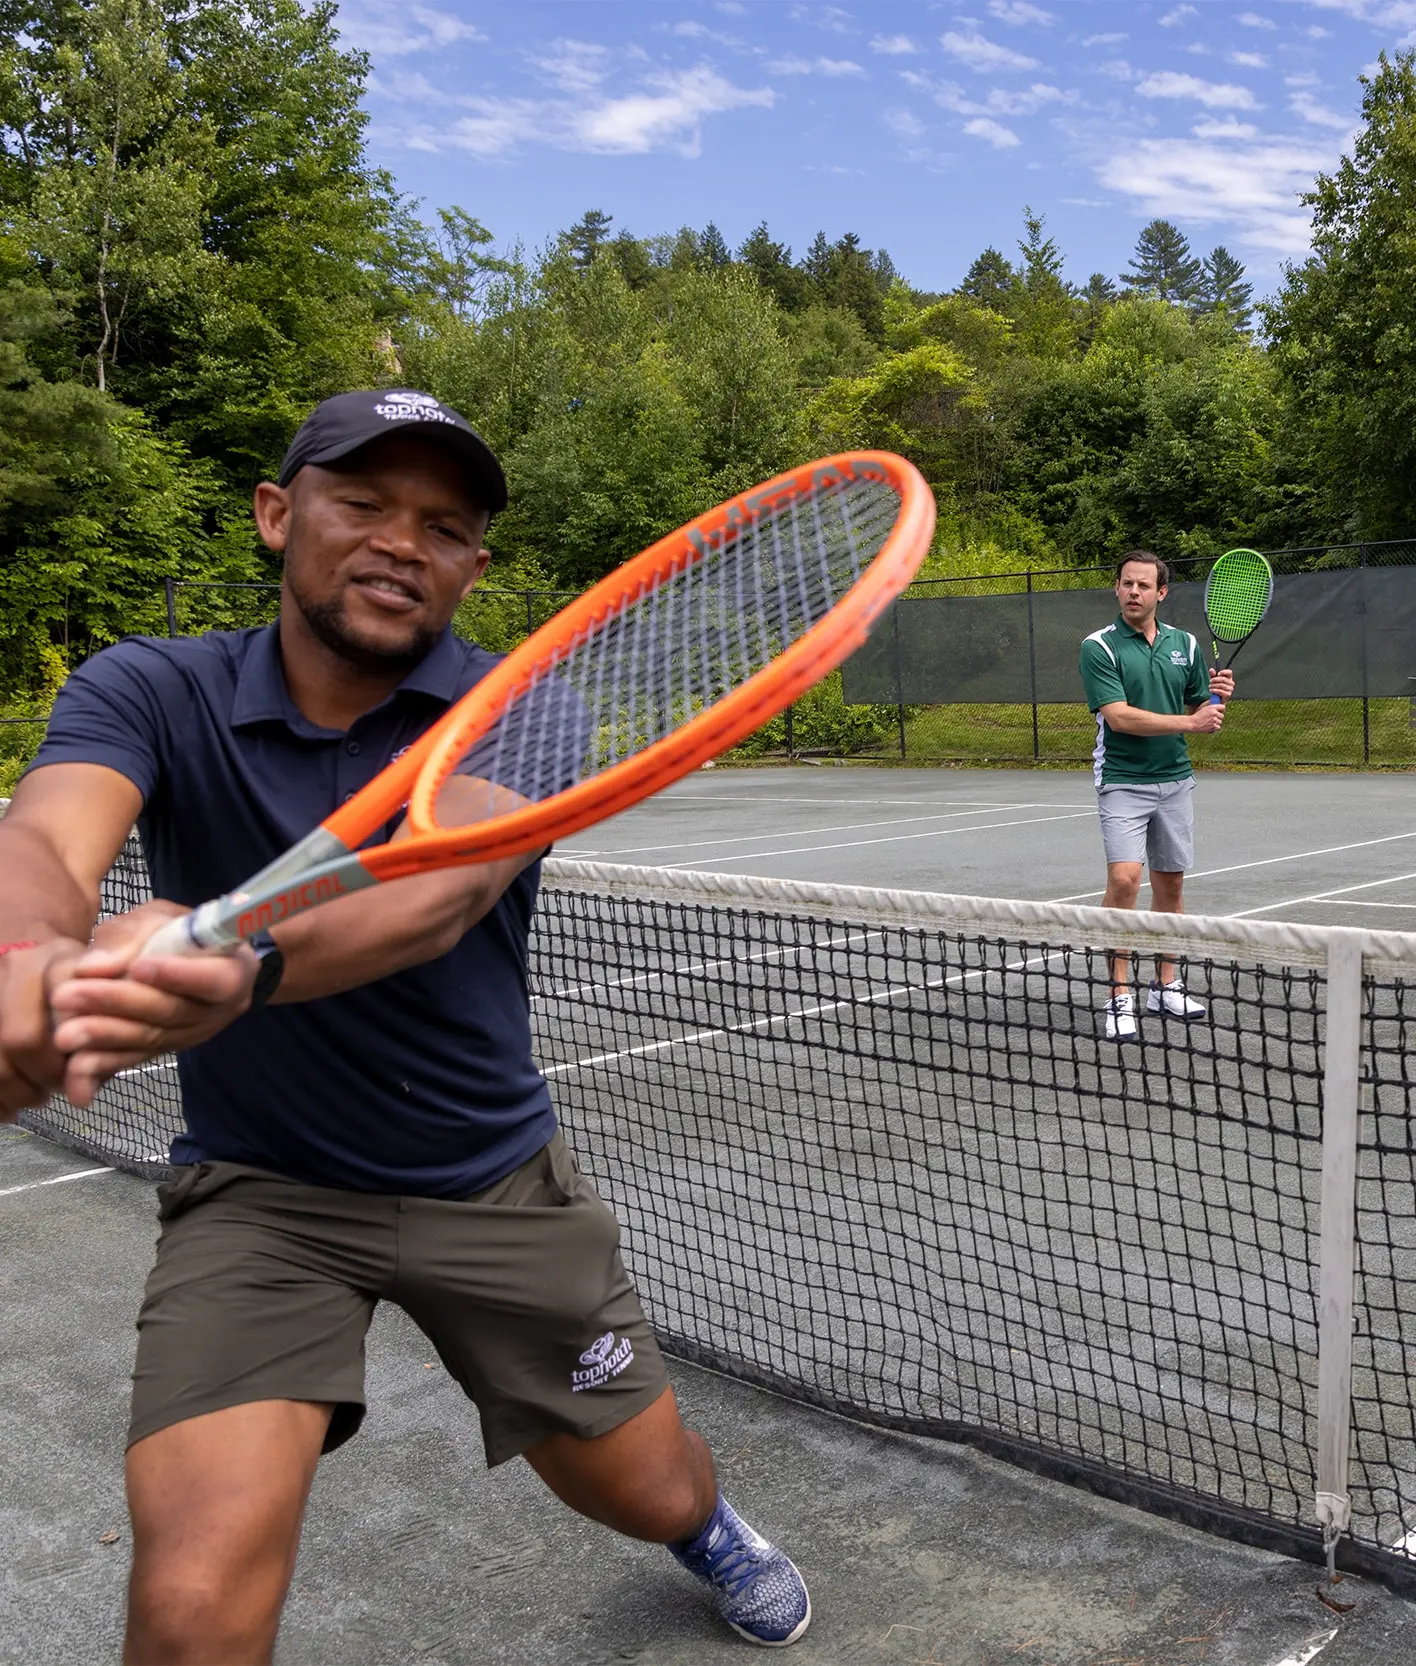 two gentleman playing tennis